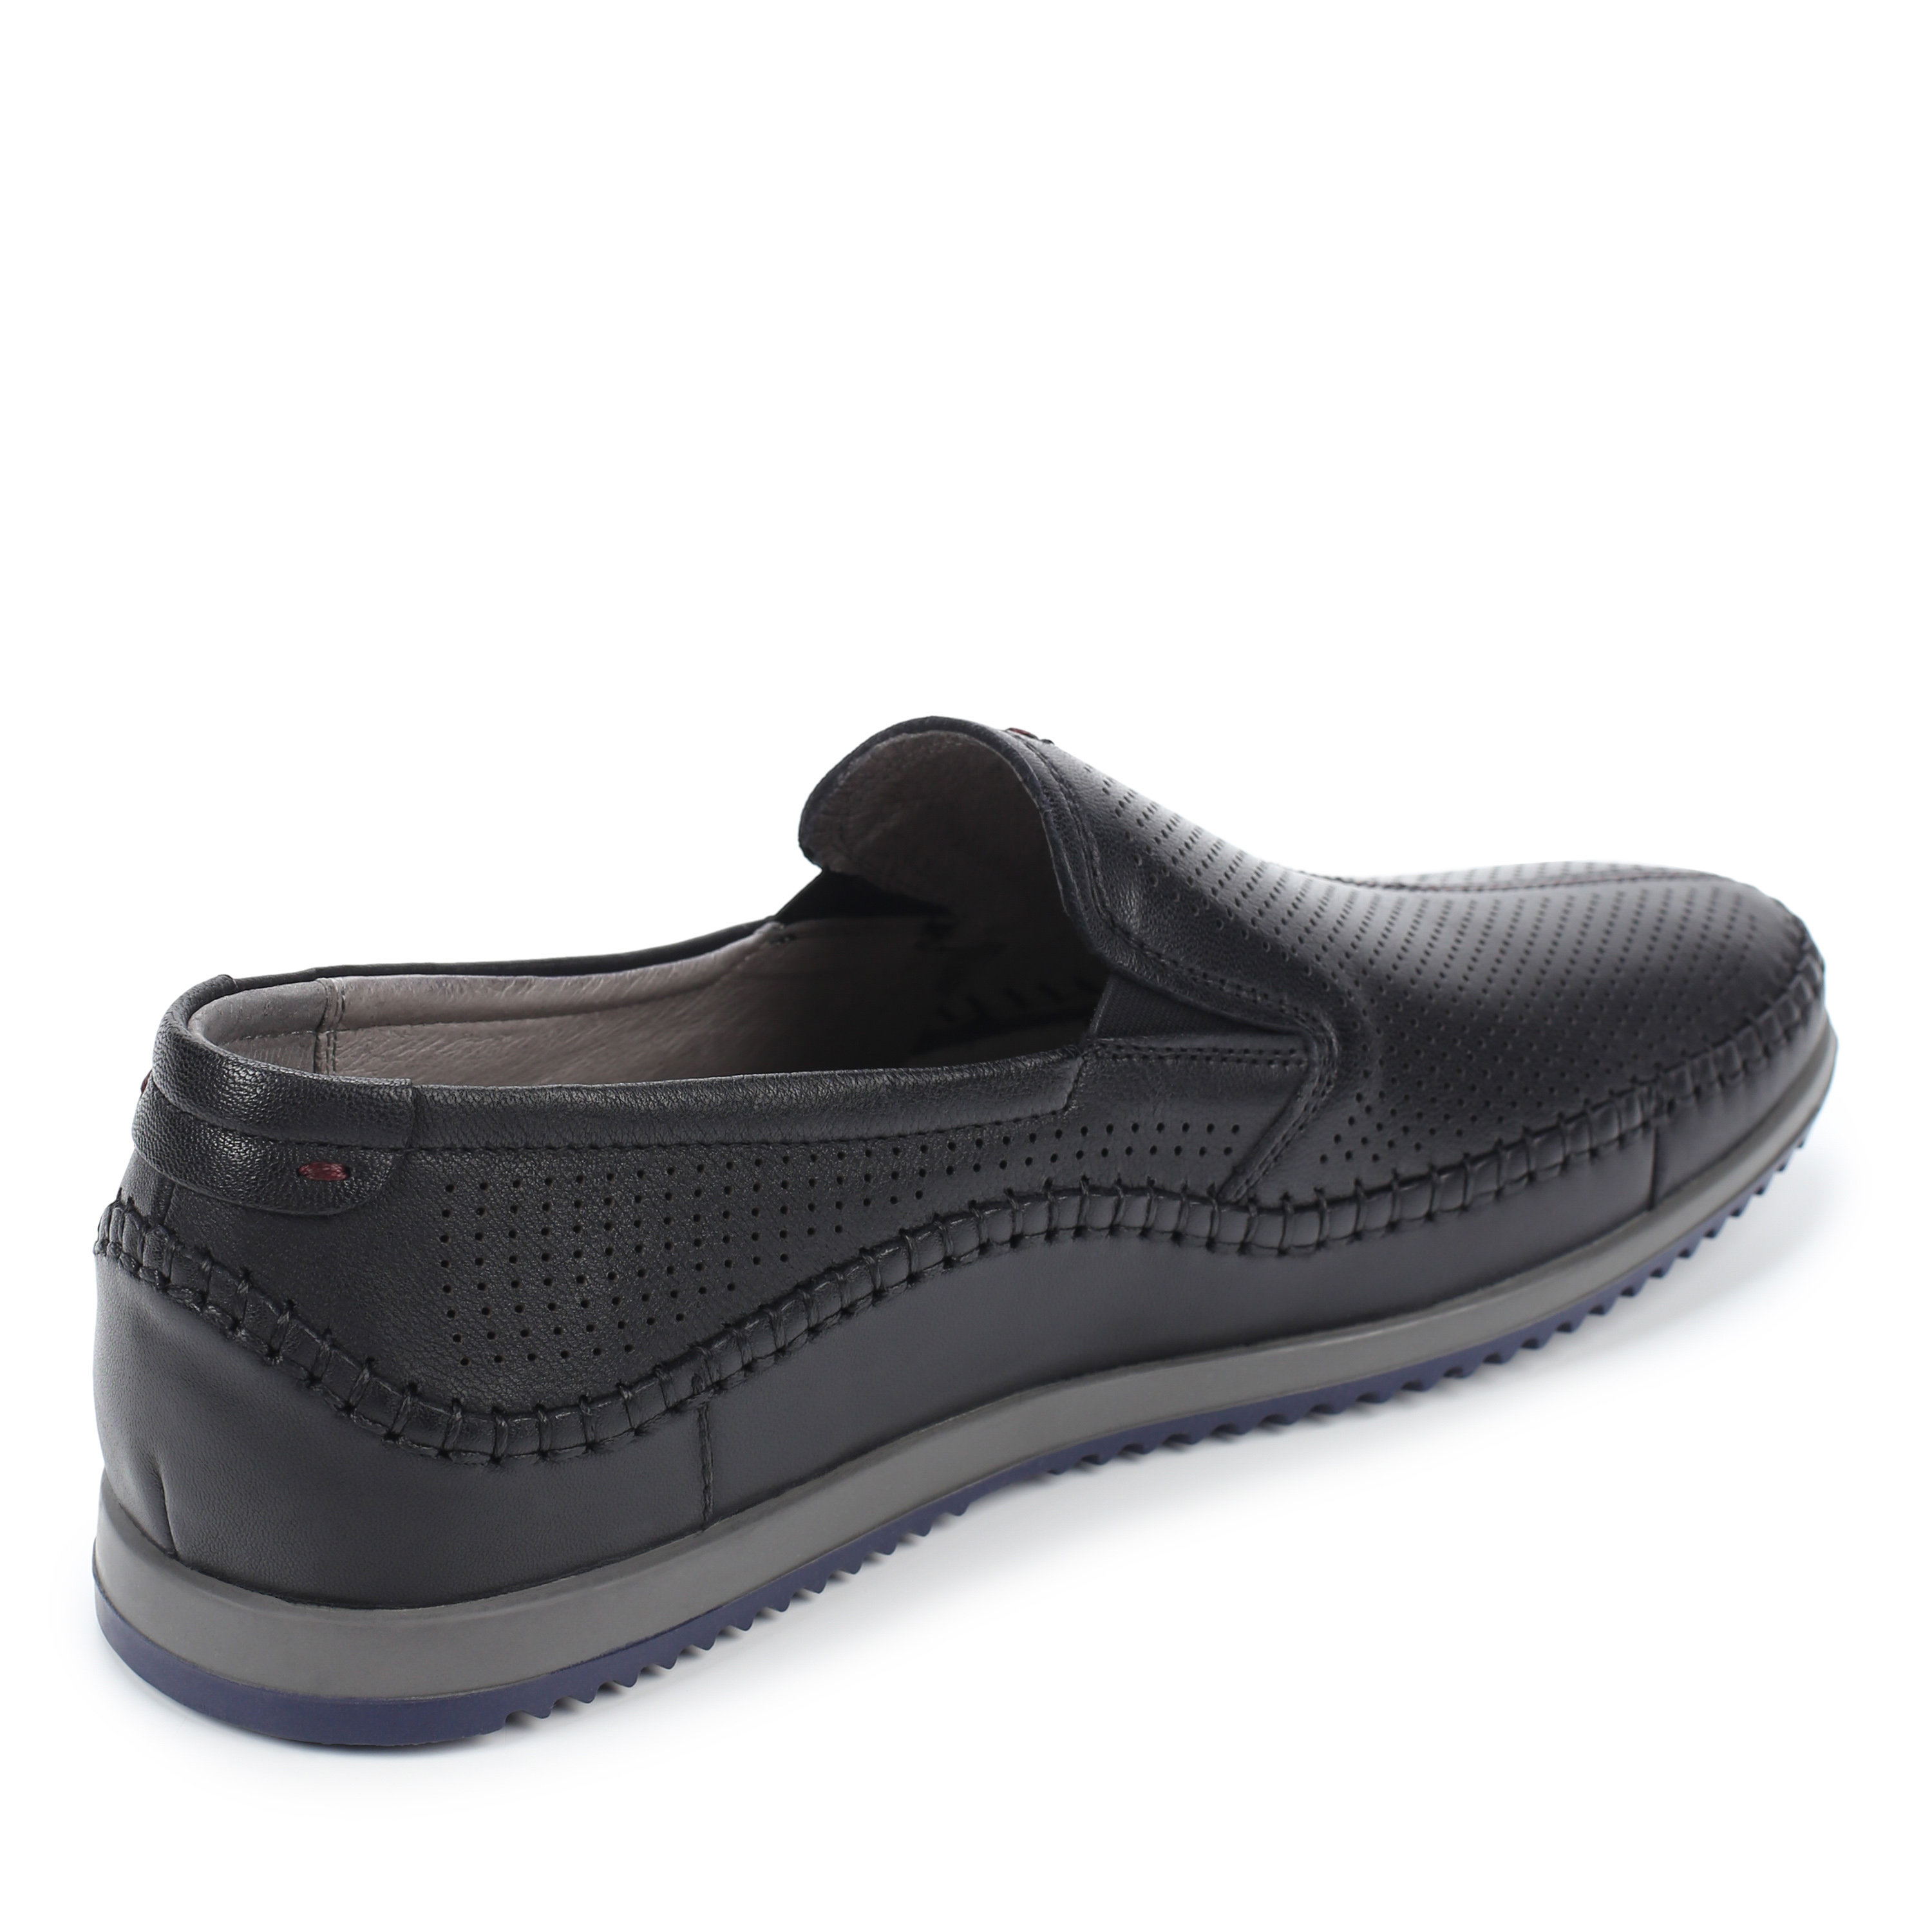 Туфли Thomas Munz 058-437B-1102 058-437B-1102, цвет черный, размер 41 - фото 3